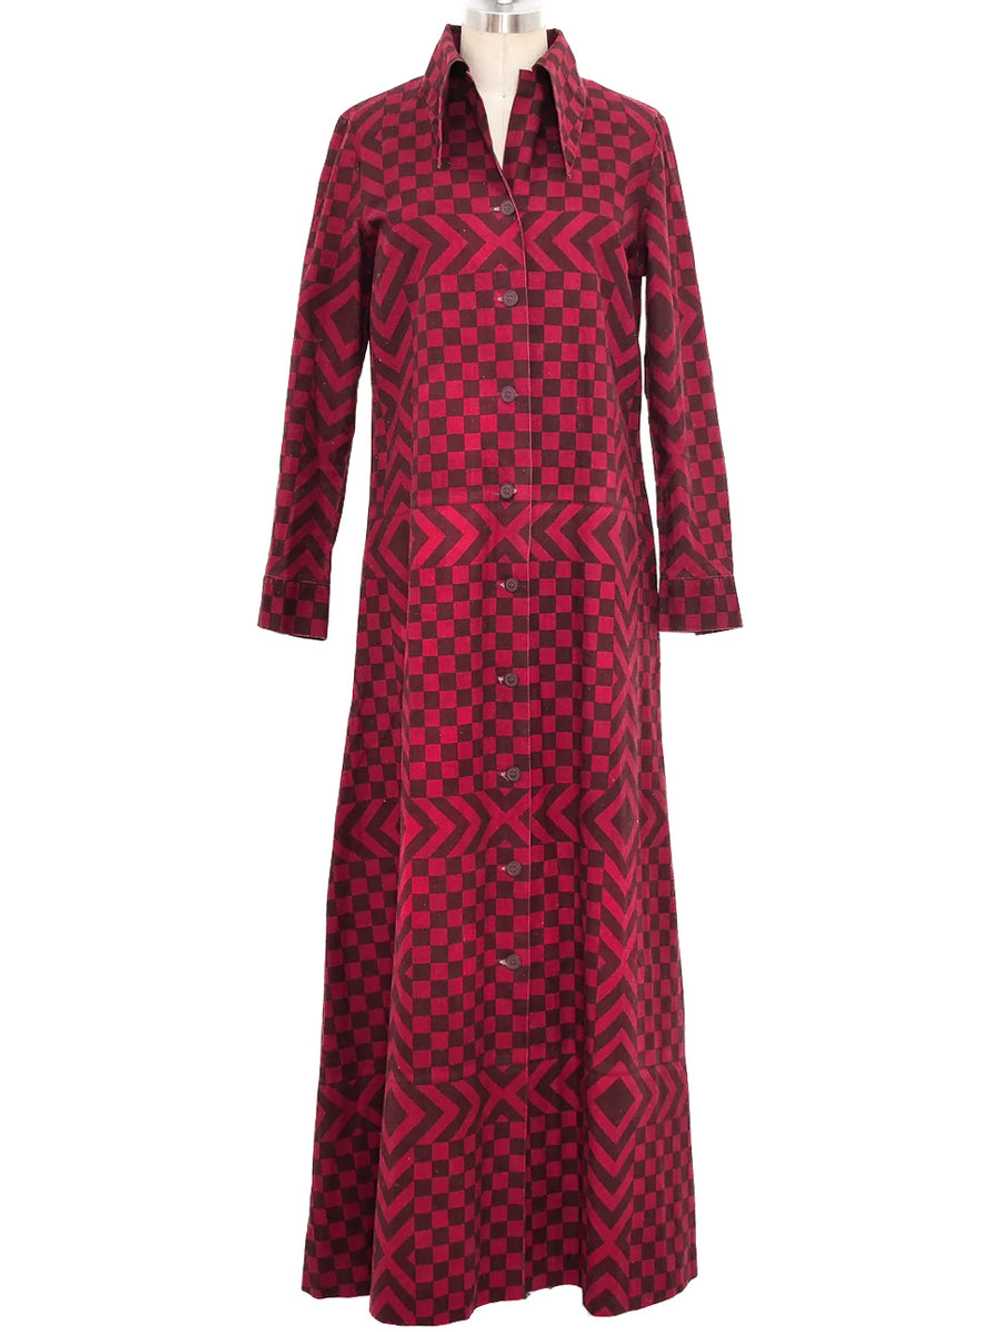 1974 Marimekko Printed Maxi Dress - image 1